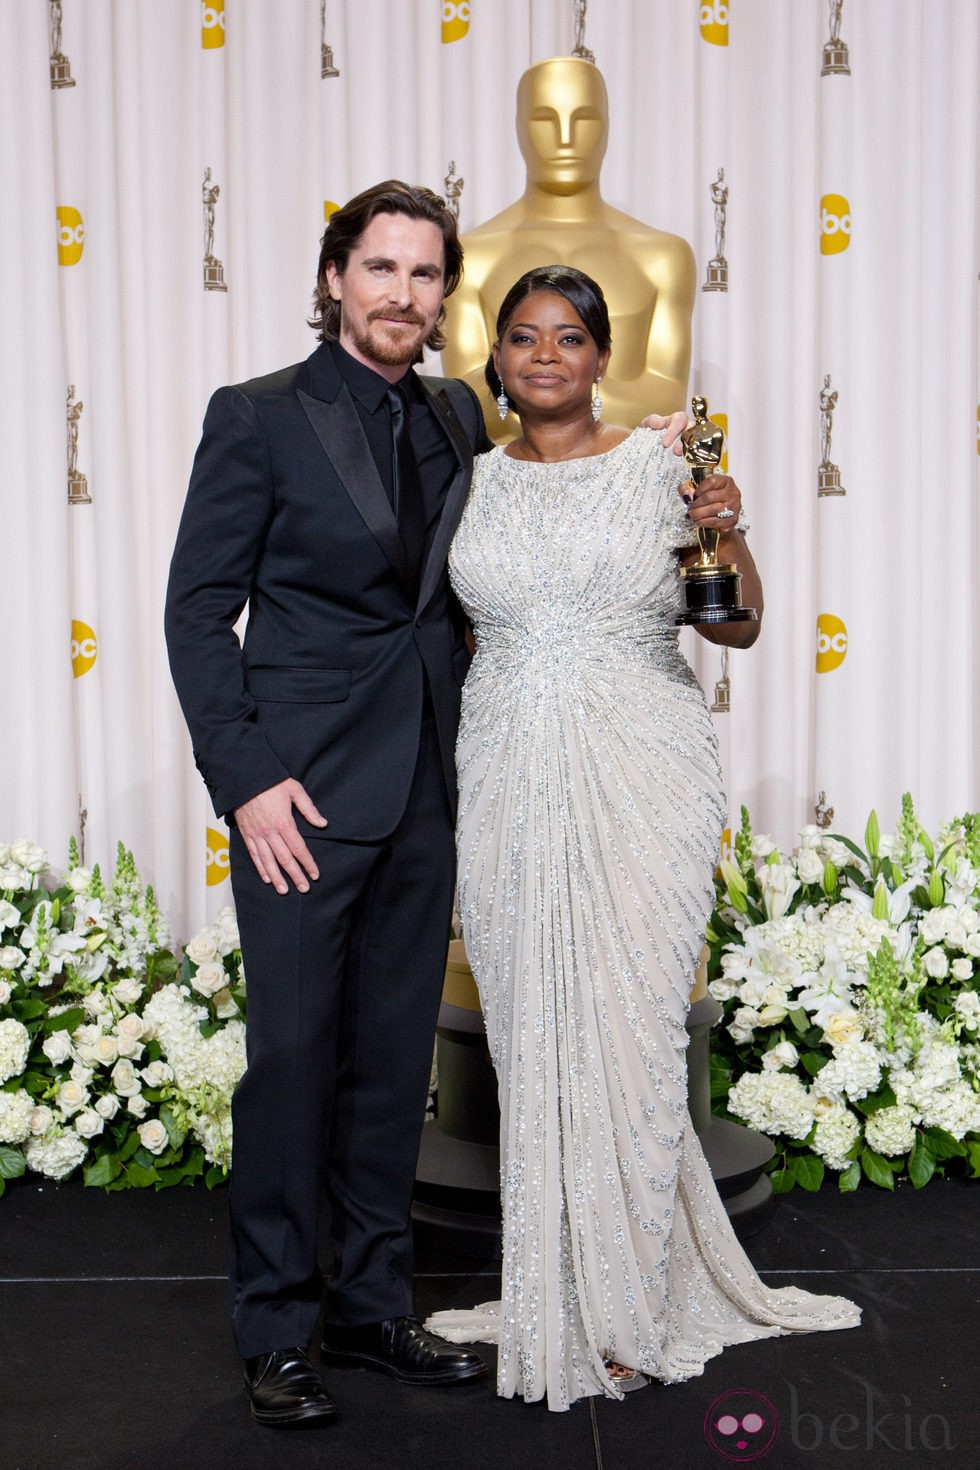 Christian Bale y Octavia Spencer en los Oscars 2012 - Premiados en los  Oscars 2012 - Foto en Bekia Actualidad